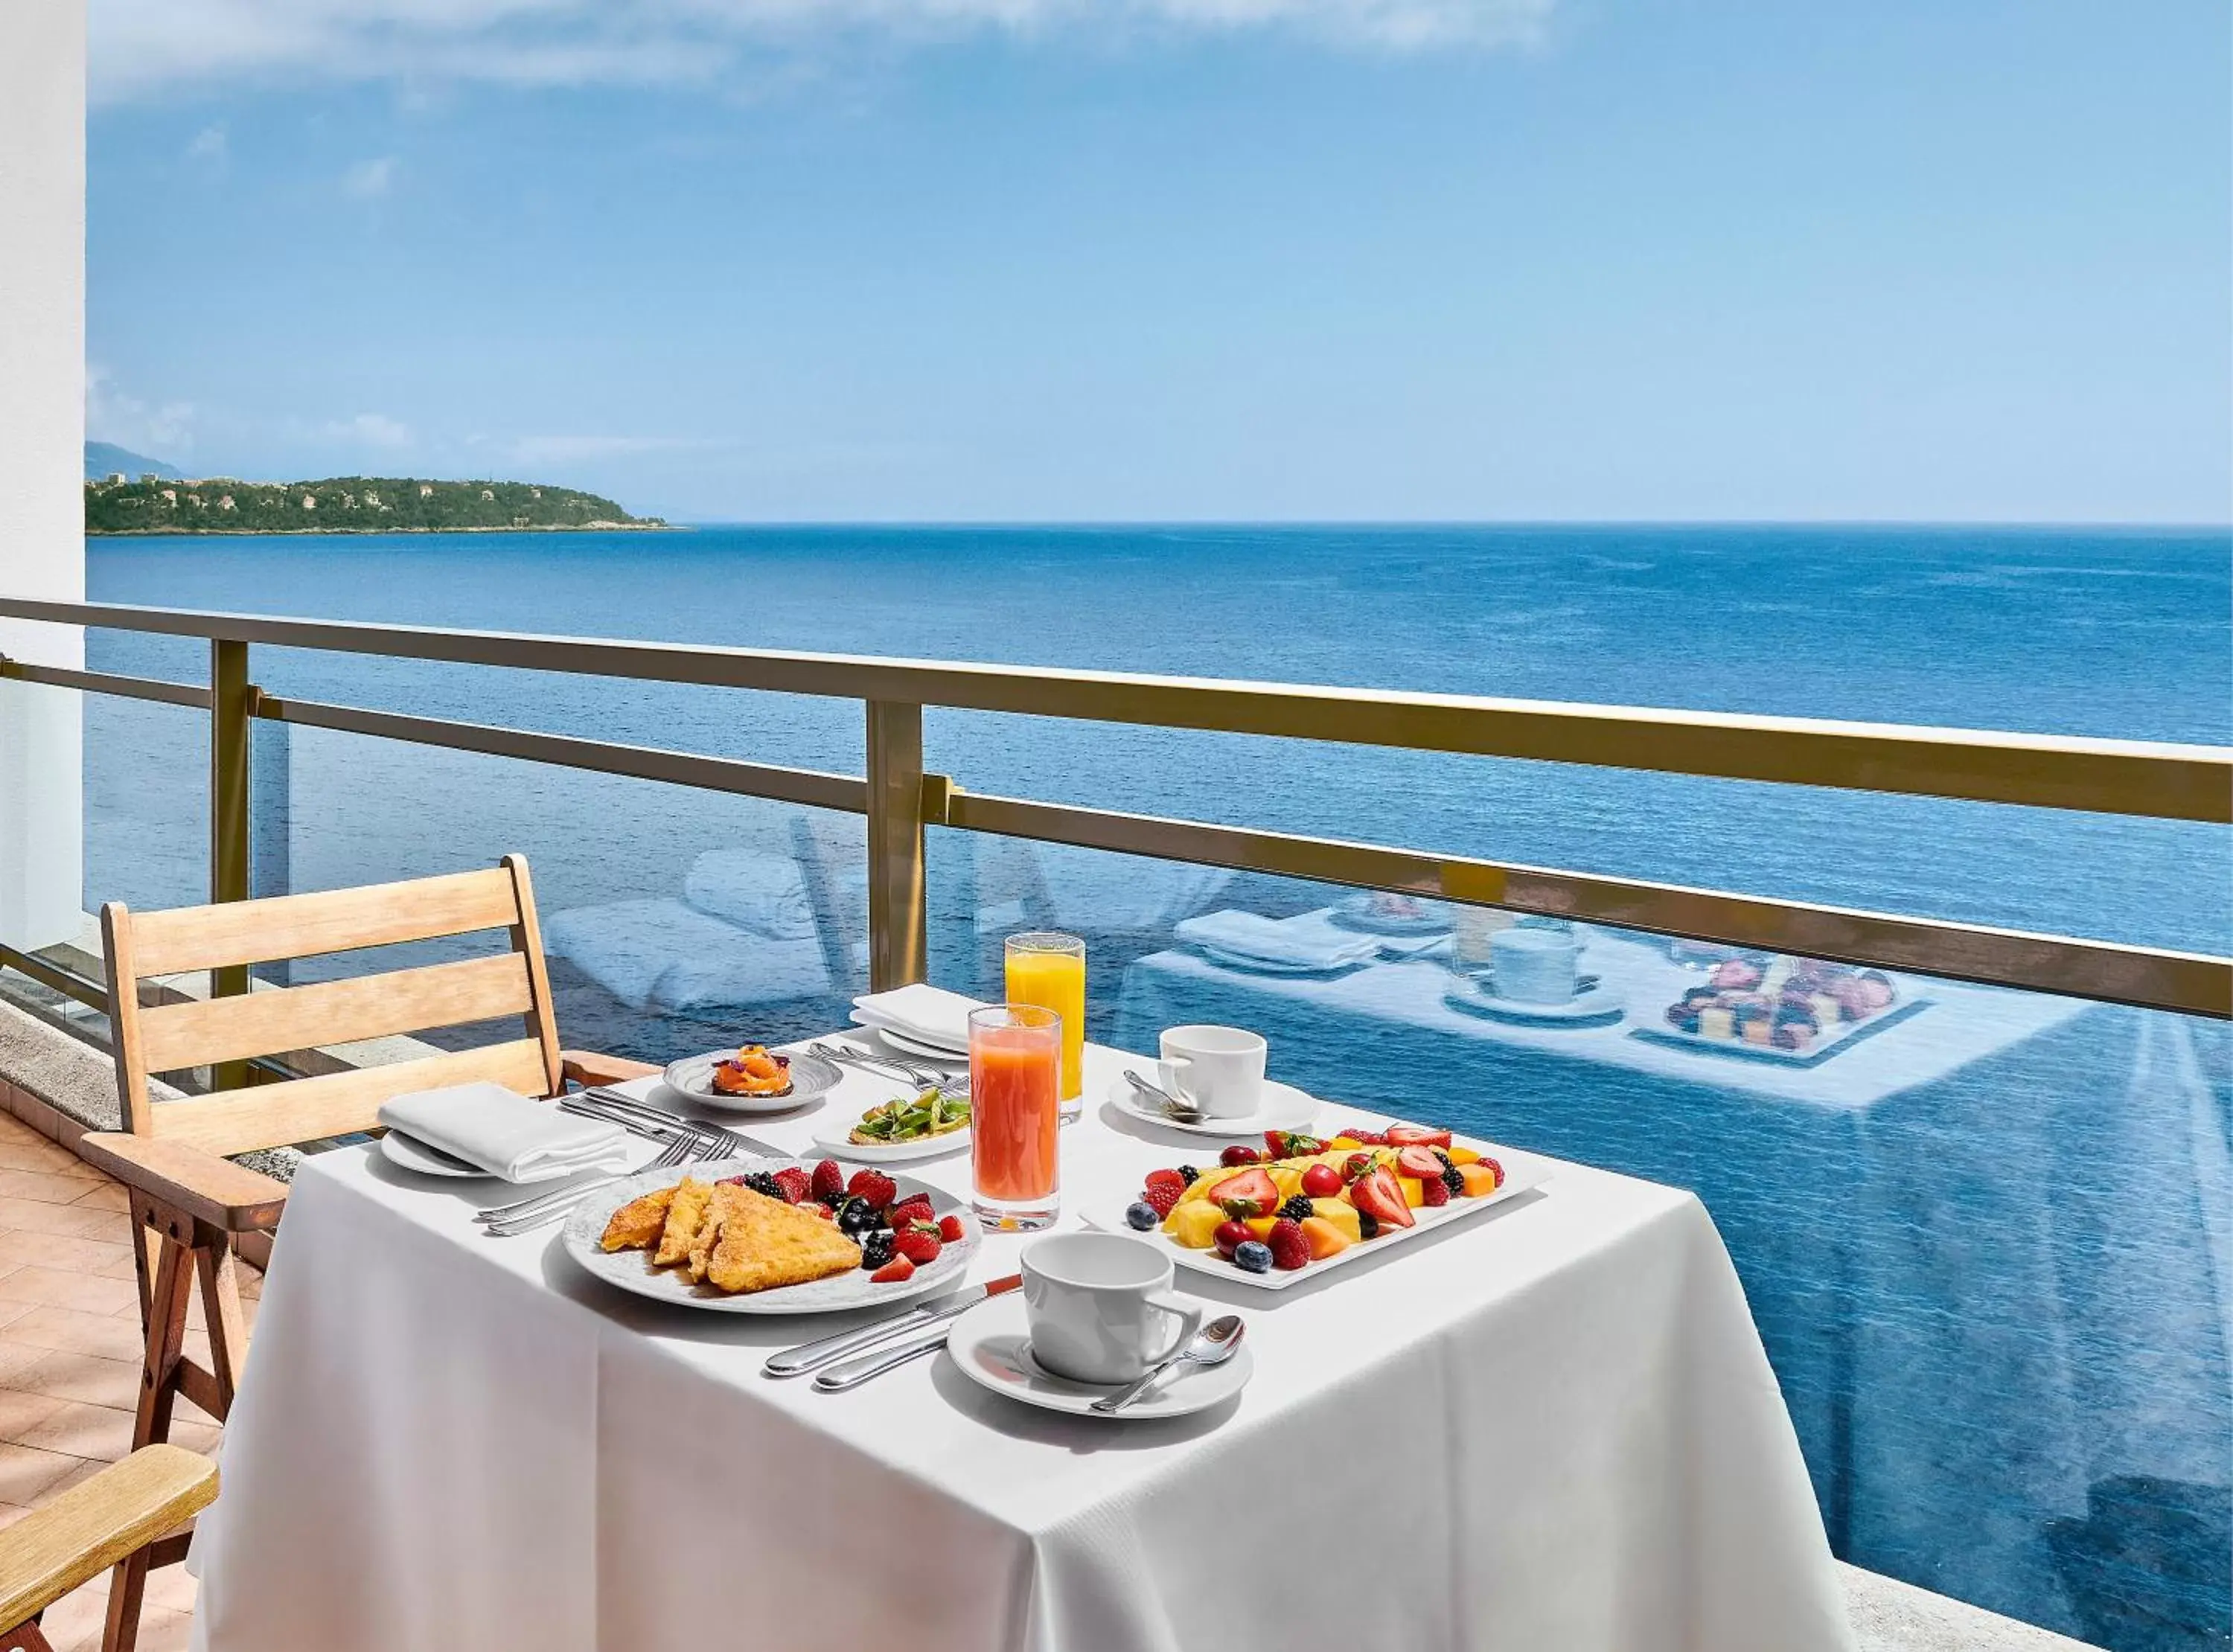 Breakfast in Fairmont Monte Carlo